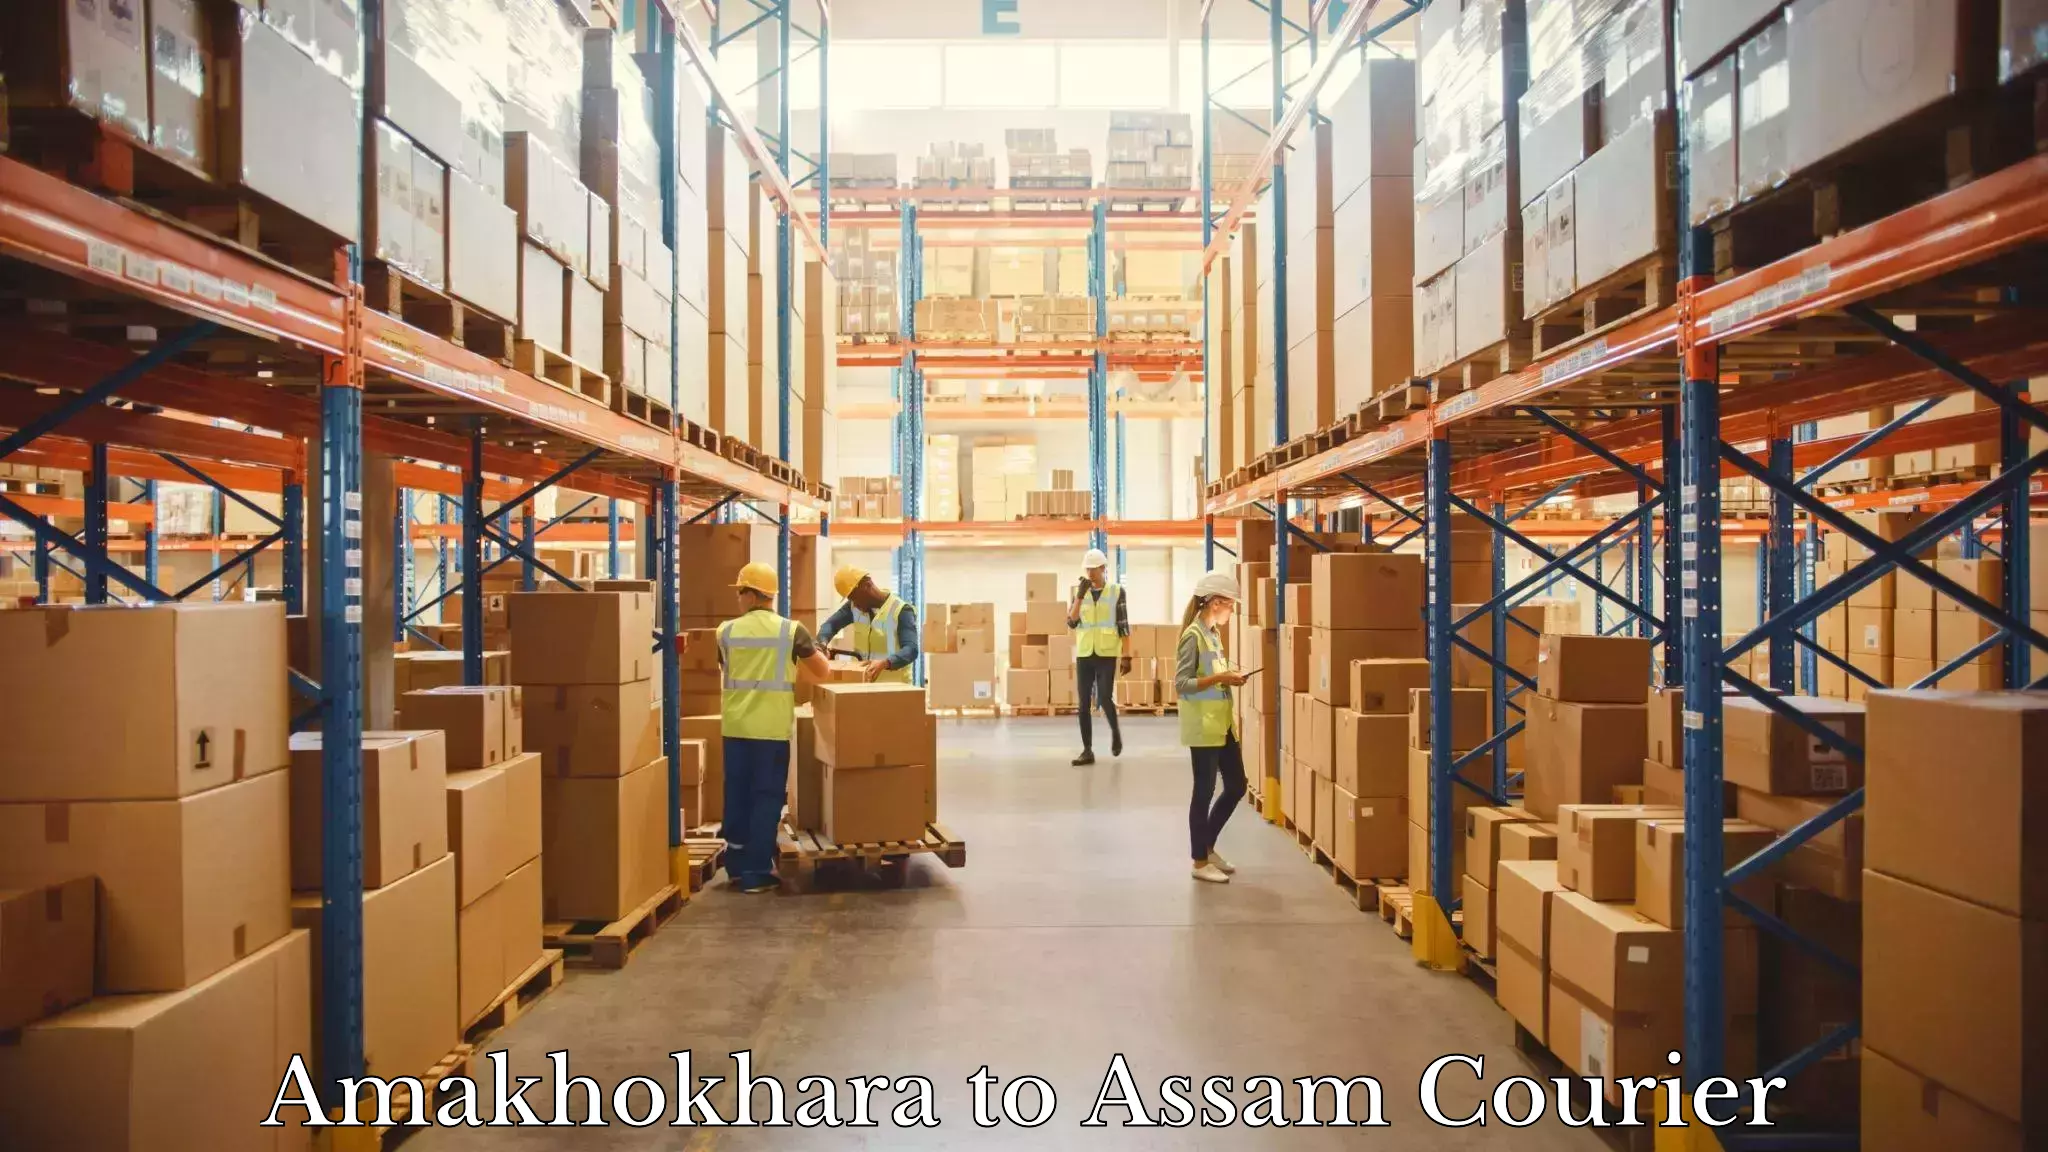 Customized shipping options Amakhokhara to Mazbat